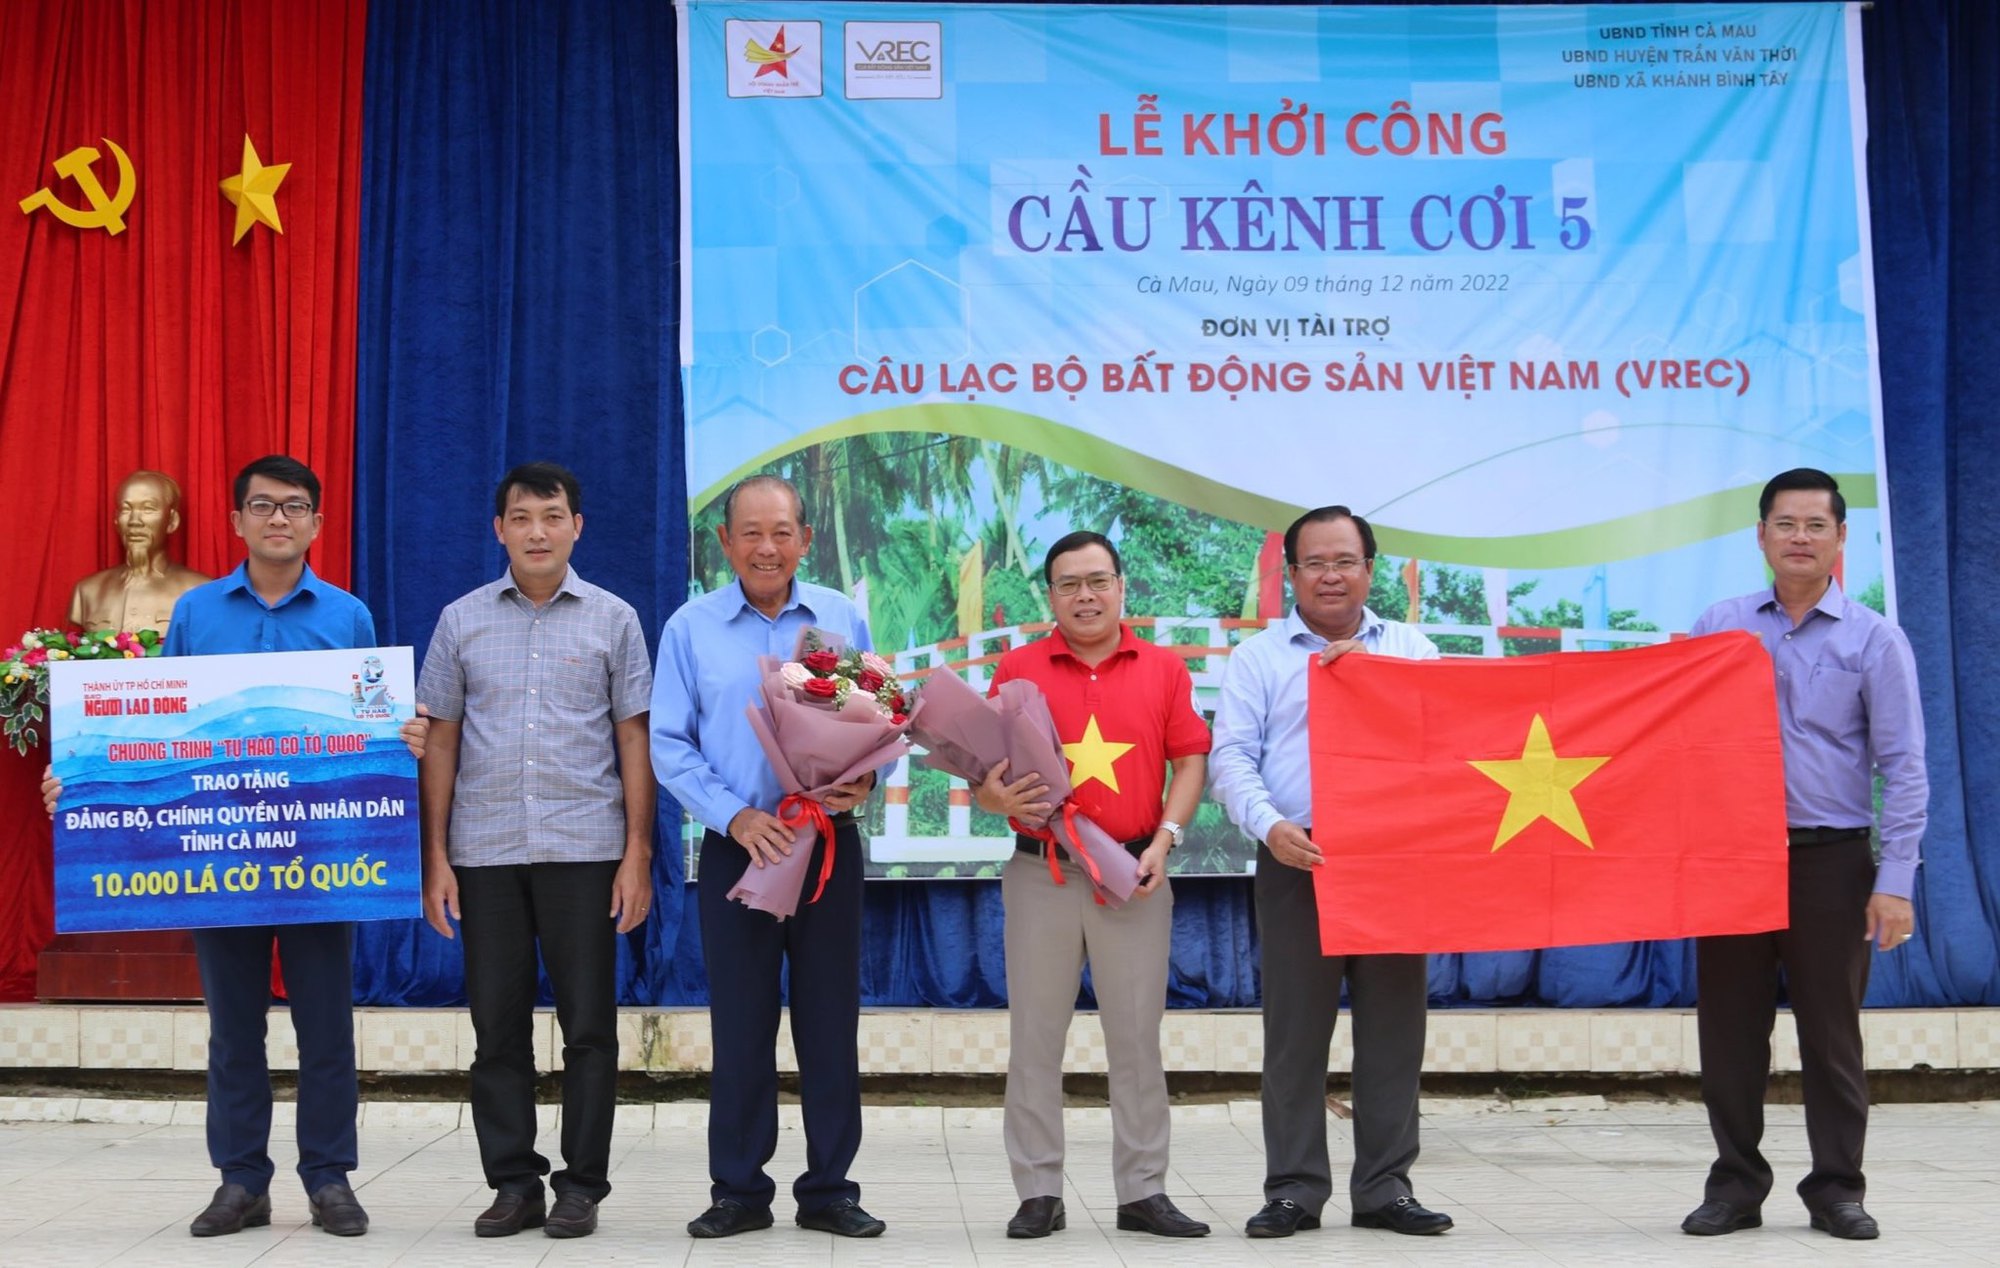 Hãy tự hào với lá cờ Tổ quốc của chúng ta, biểu tượng đại diện cho sự đoàn kết và tiến bộ của đất nước Việt Nam. Vào năm 2024 này, ta đã đạt được rất nhiều thành tựu vượt bậc, là một đất nước phát triển với vai trò ngày càng quan trọng trên trình độ quốc tế. Hãy cùng nhau chiêm ngưỡng hình ảnh liên quan đến lá cờ Tổ quốc để tôn vinh sự giàu có và đa dạng của đất nước Việt Nam.